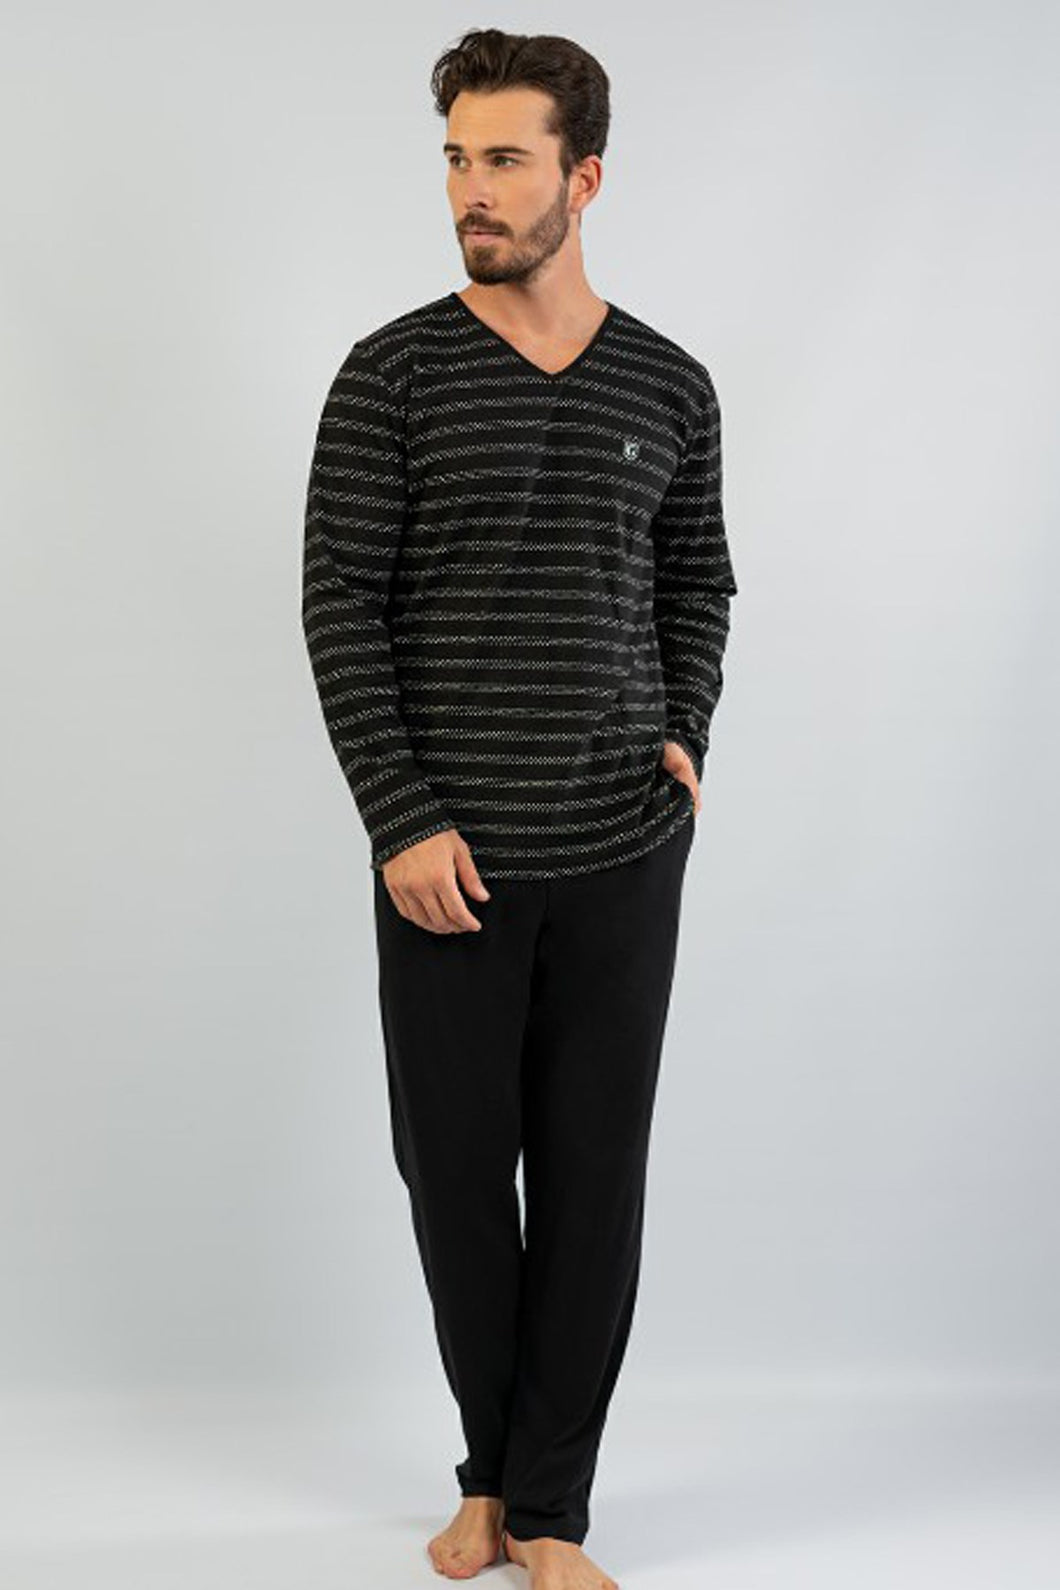 Men's Long Sleeves Striped Black Pajama Set